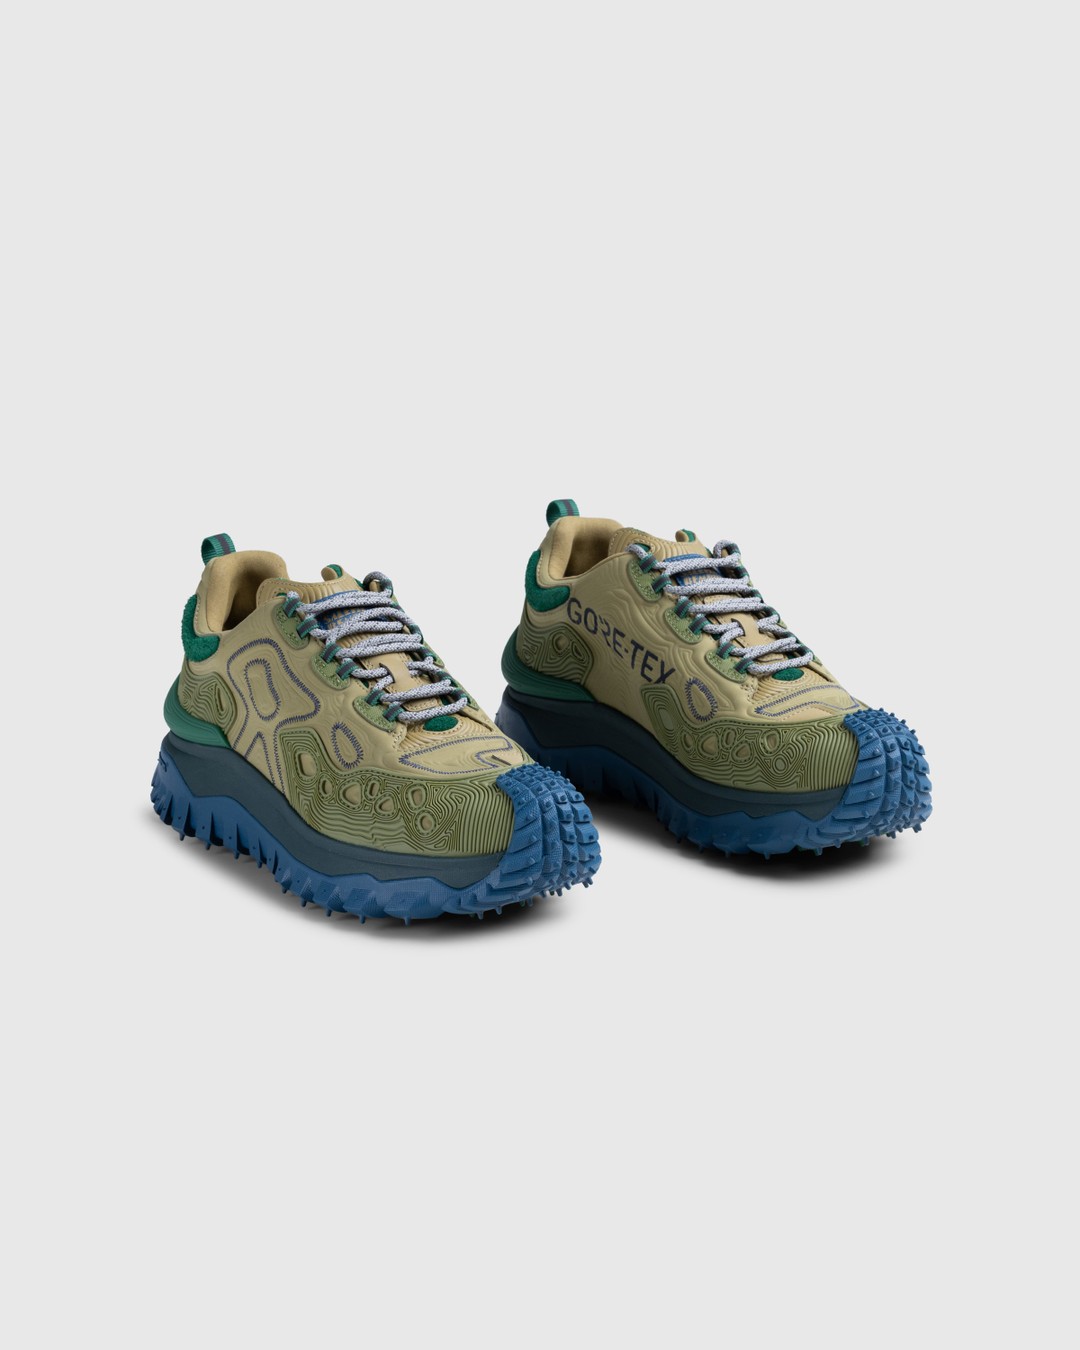 Moncler x Salehe Bembury – Trailgrip Grain Sneakers Beige - Low Top Sneakers - Beige - Image 3